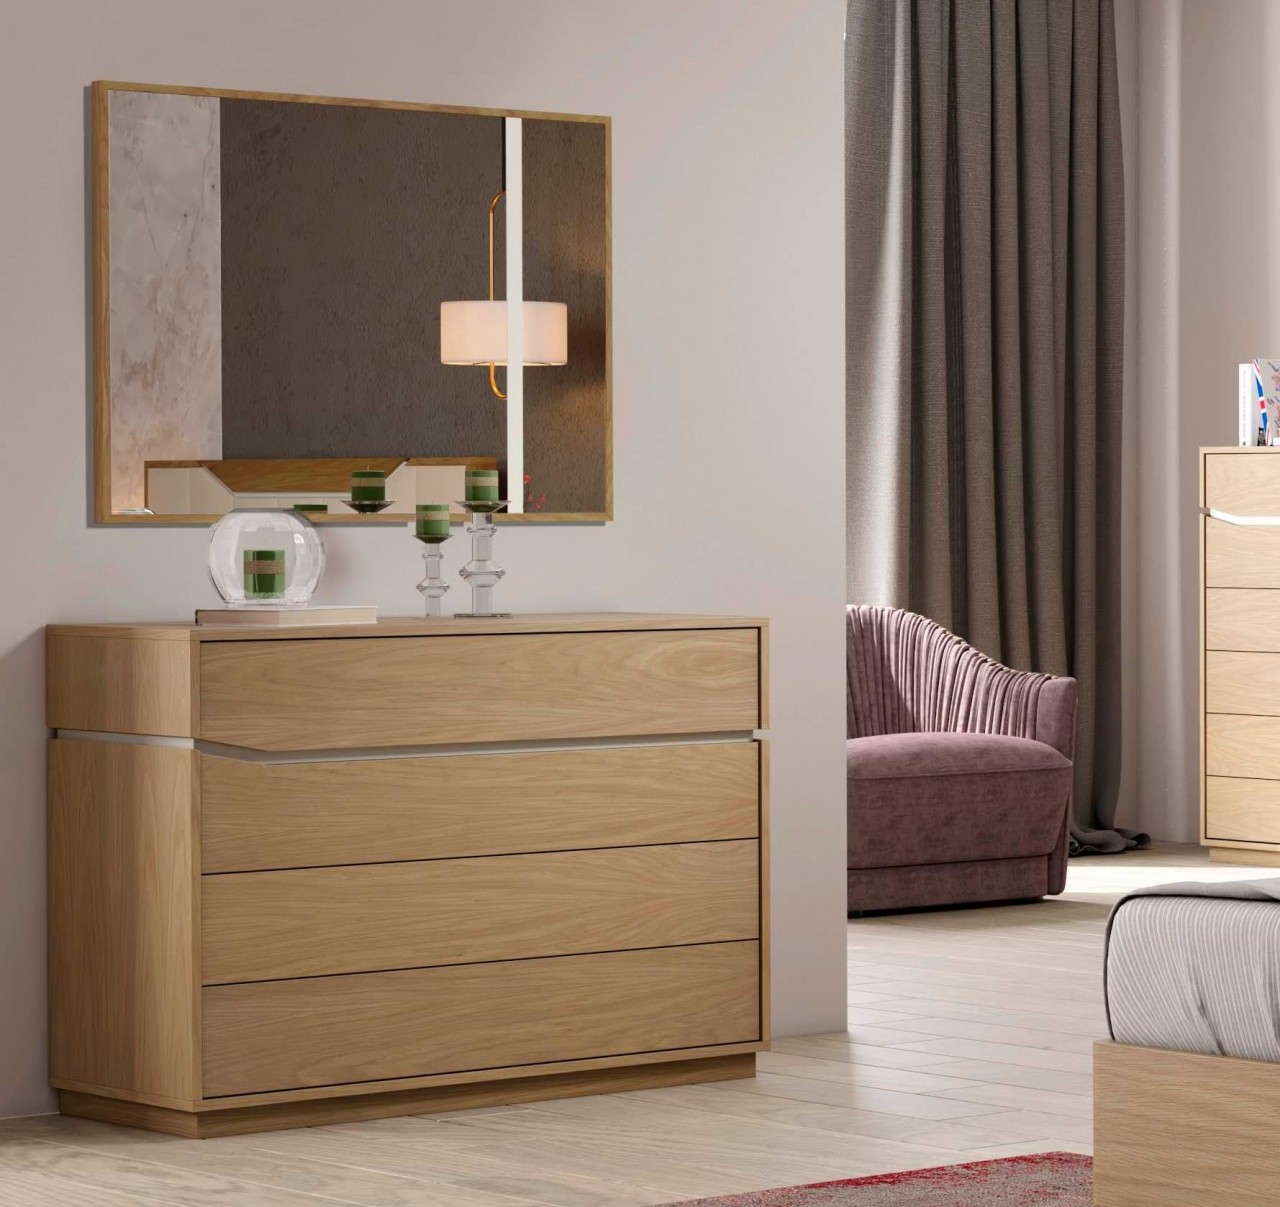 Um quarto de casal moderno e sofisticado precisa de uma comoda e espelho Luca Mor dá um toque elegante a este ambiente.